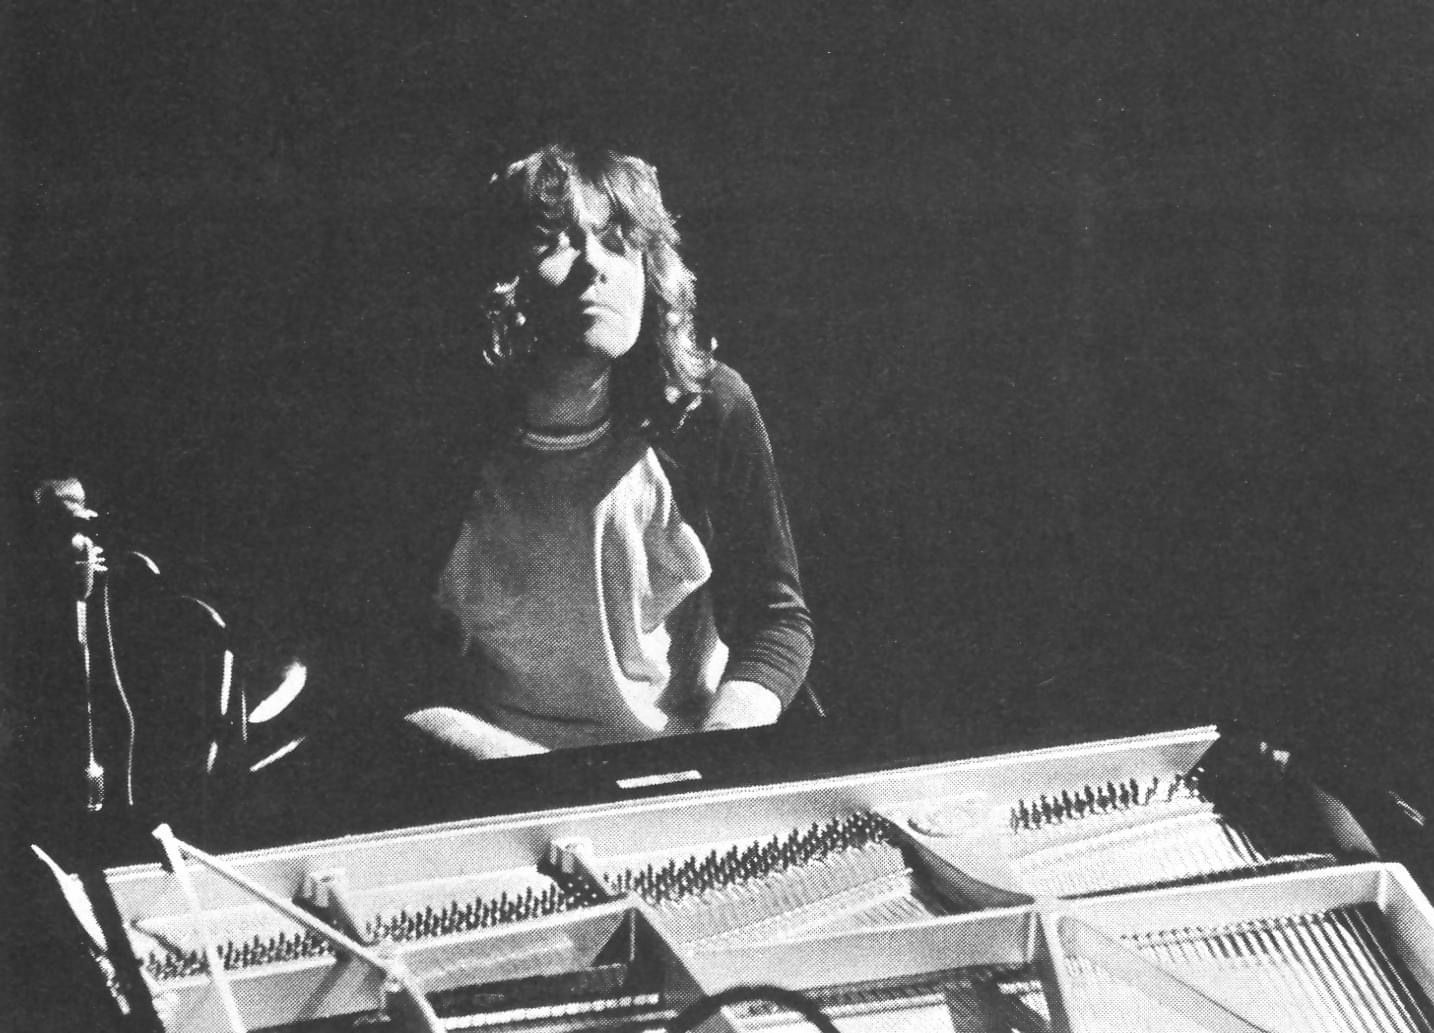 Robert Lamm at Piano 1972